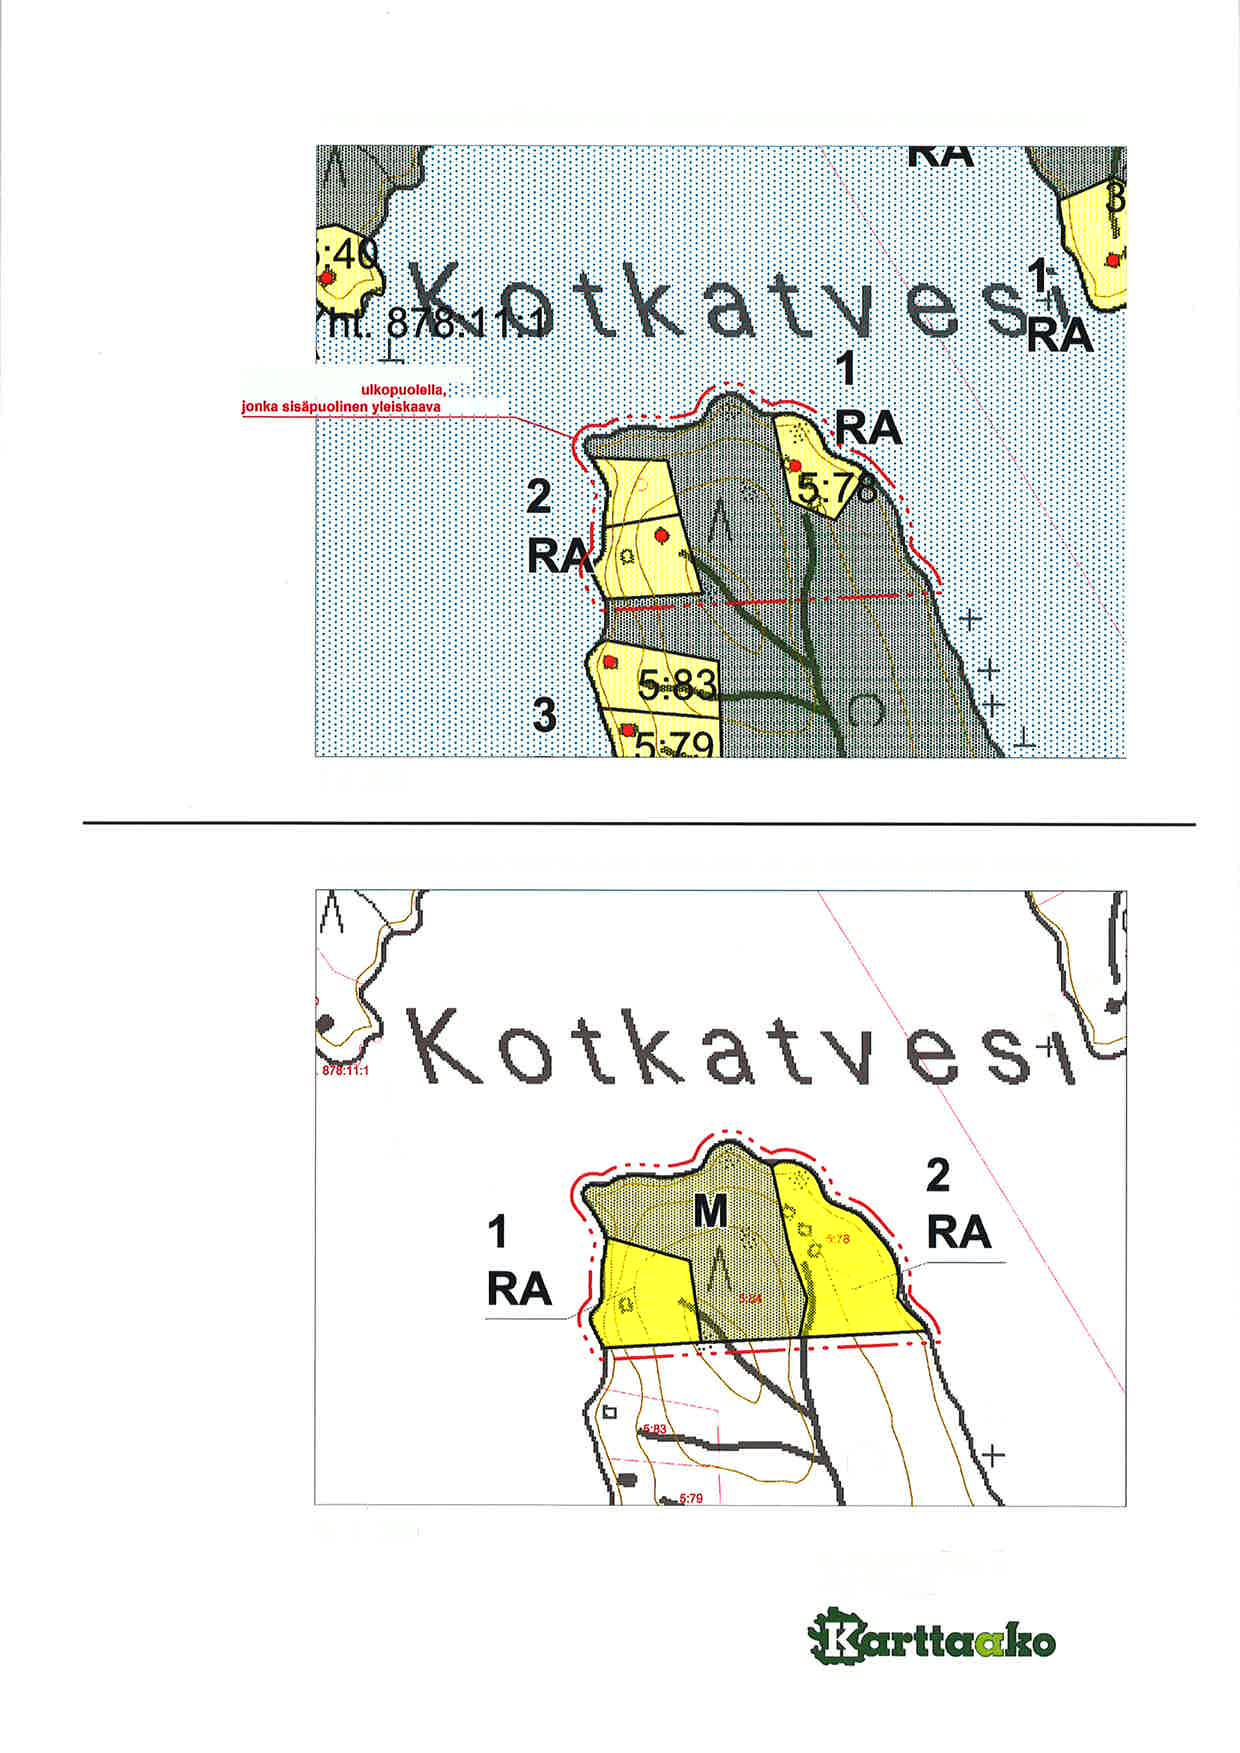 ote LTEKUNEEN-RYÖKÄSVEDEN RANTAYLETSKAAVASTA (hyväksytty 25.9.2006) Ð d Punainon p stskatkov iva. on.1 0 m : sen kaava-alueen muuttuu.